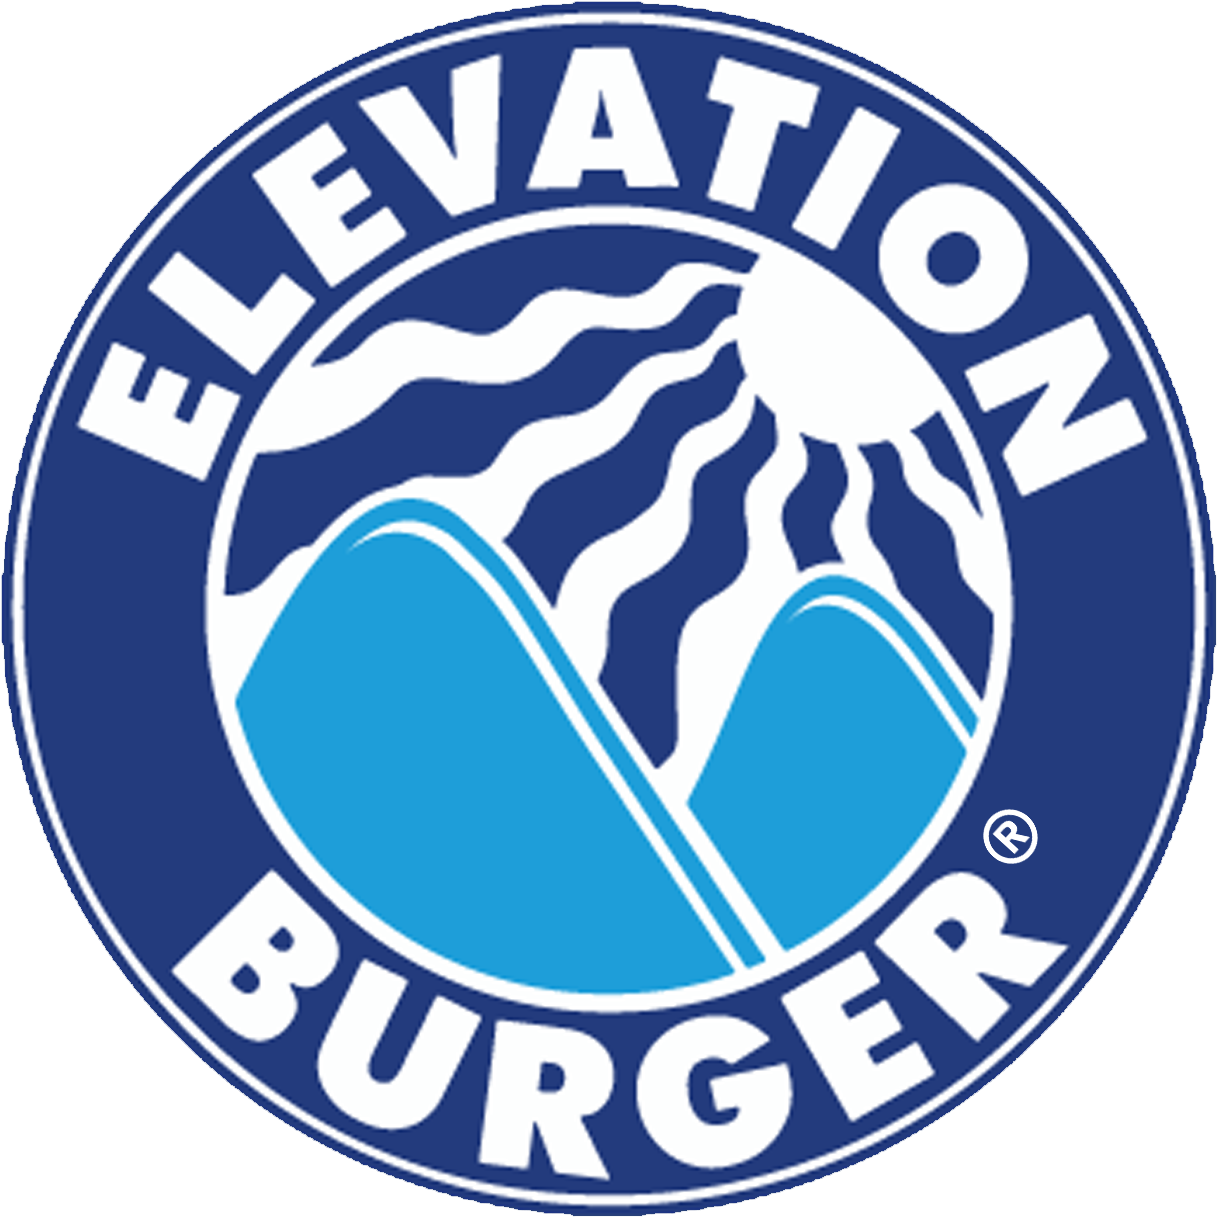 Elevation Burger Logo - Elevation Burger Logo (1371x1295)